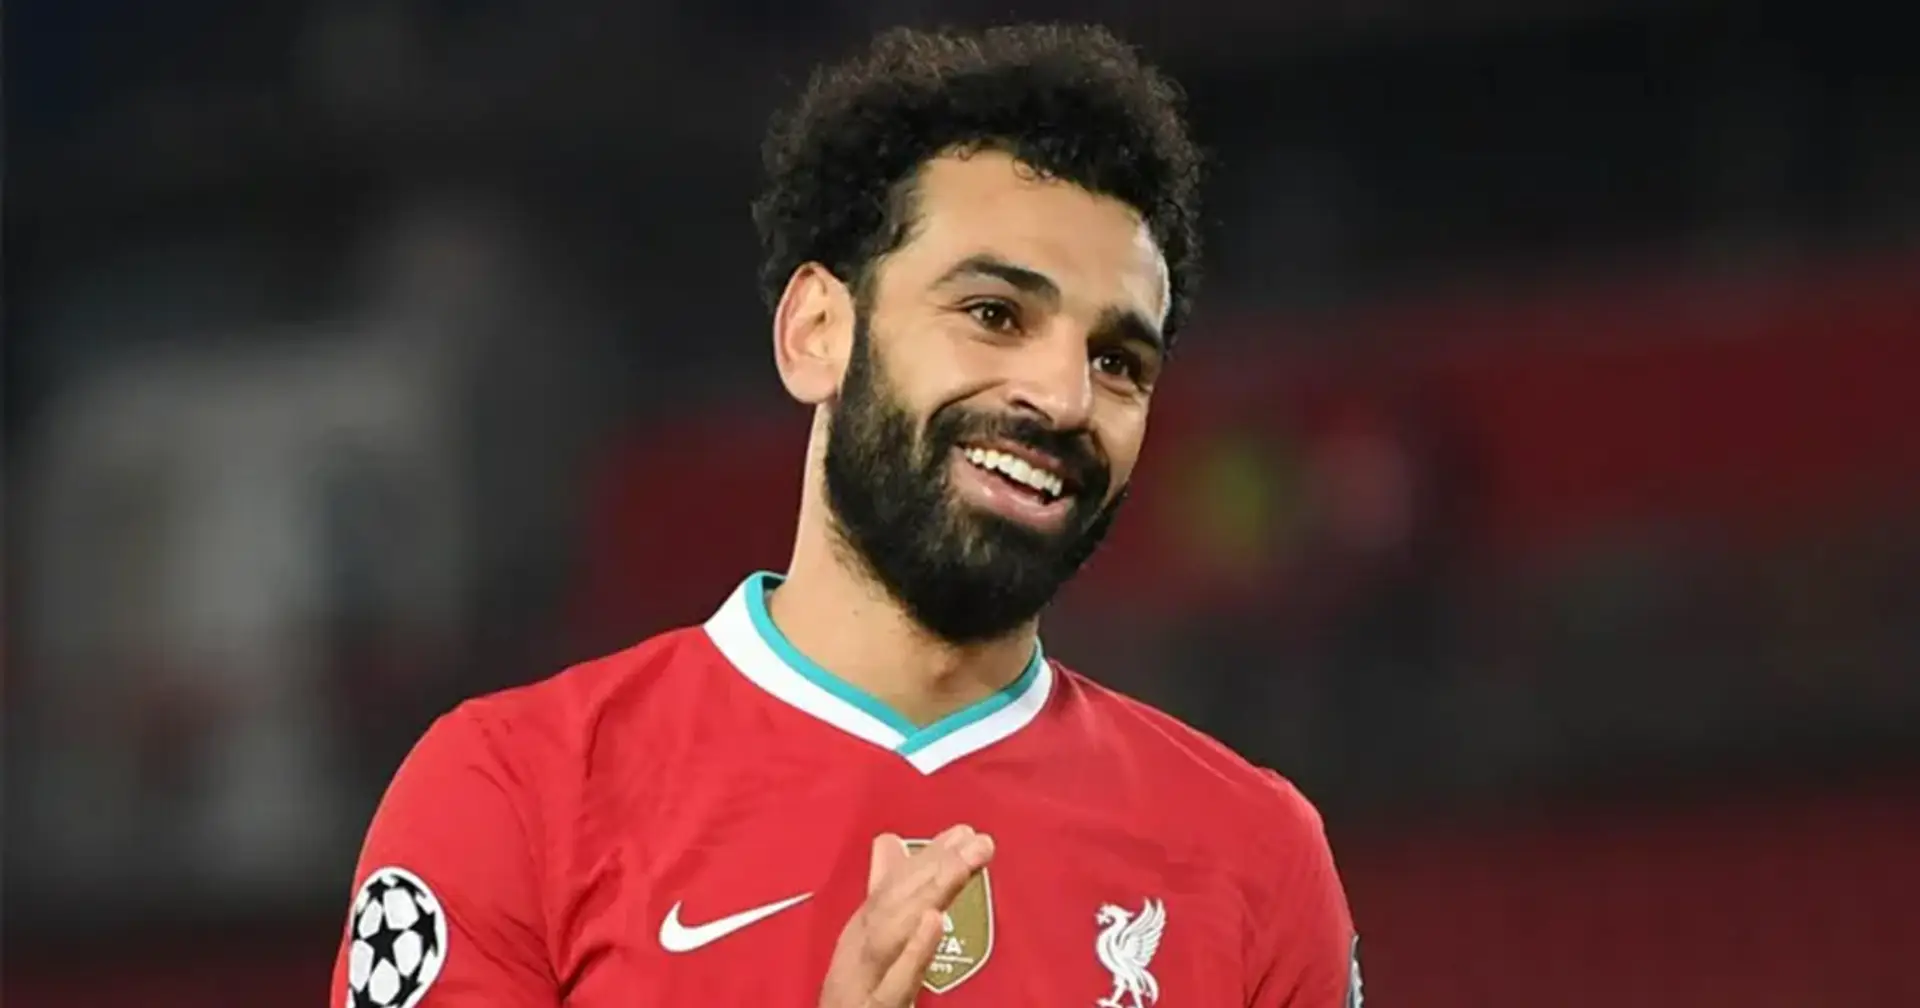 El Real Madrid 'muy interesado' en Salah; el egipcio es un gran objetivo para el 2021 (fiabilidad: 3 estrellas)